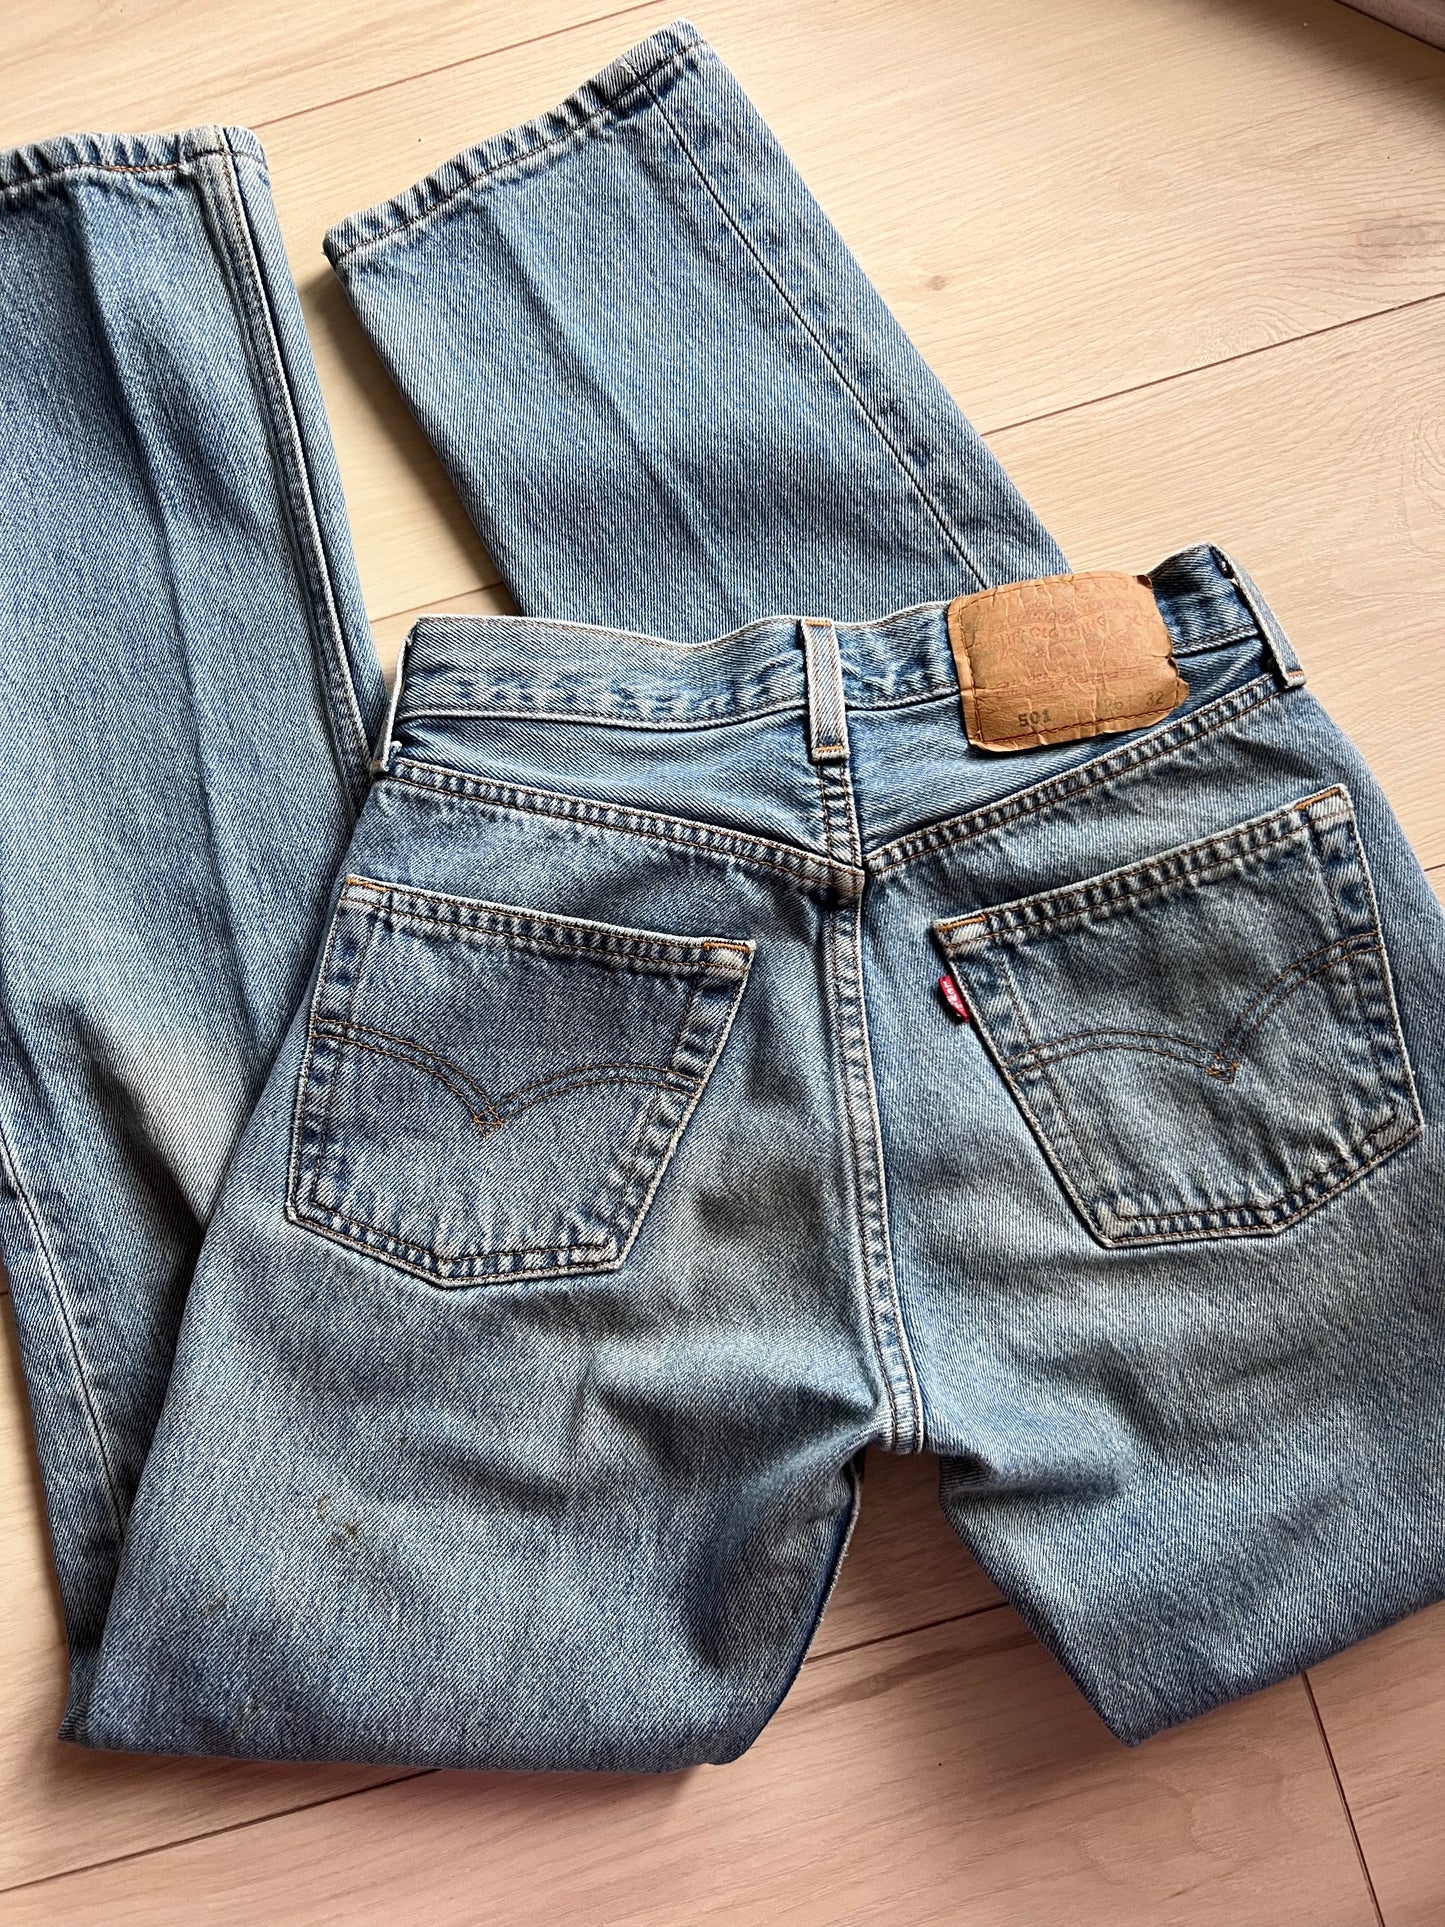 Size 24 Vintage Levi’s 501 jeans